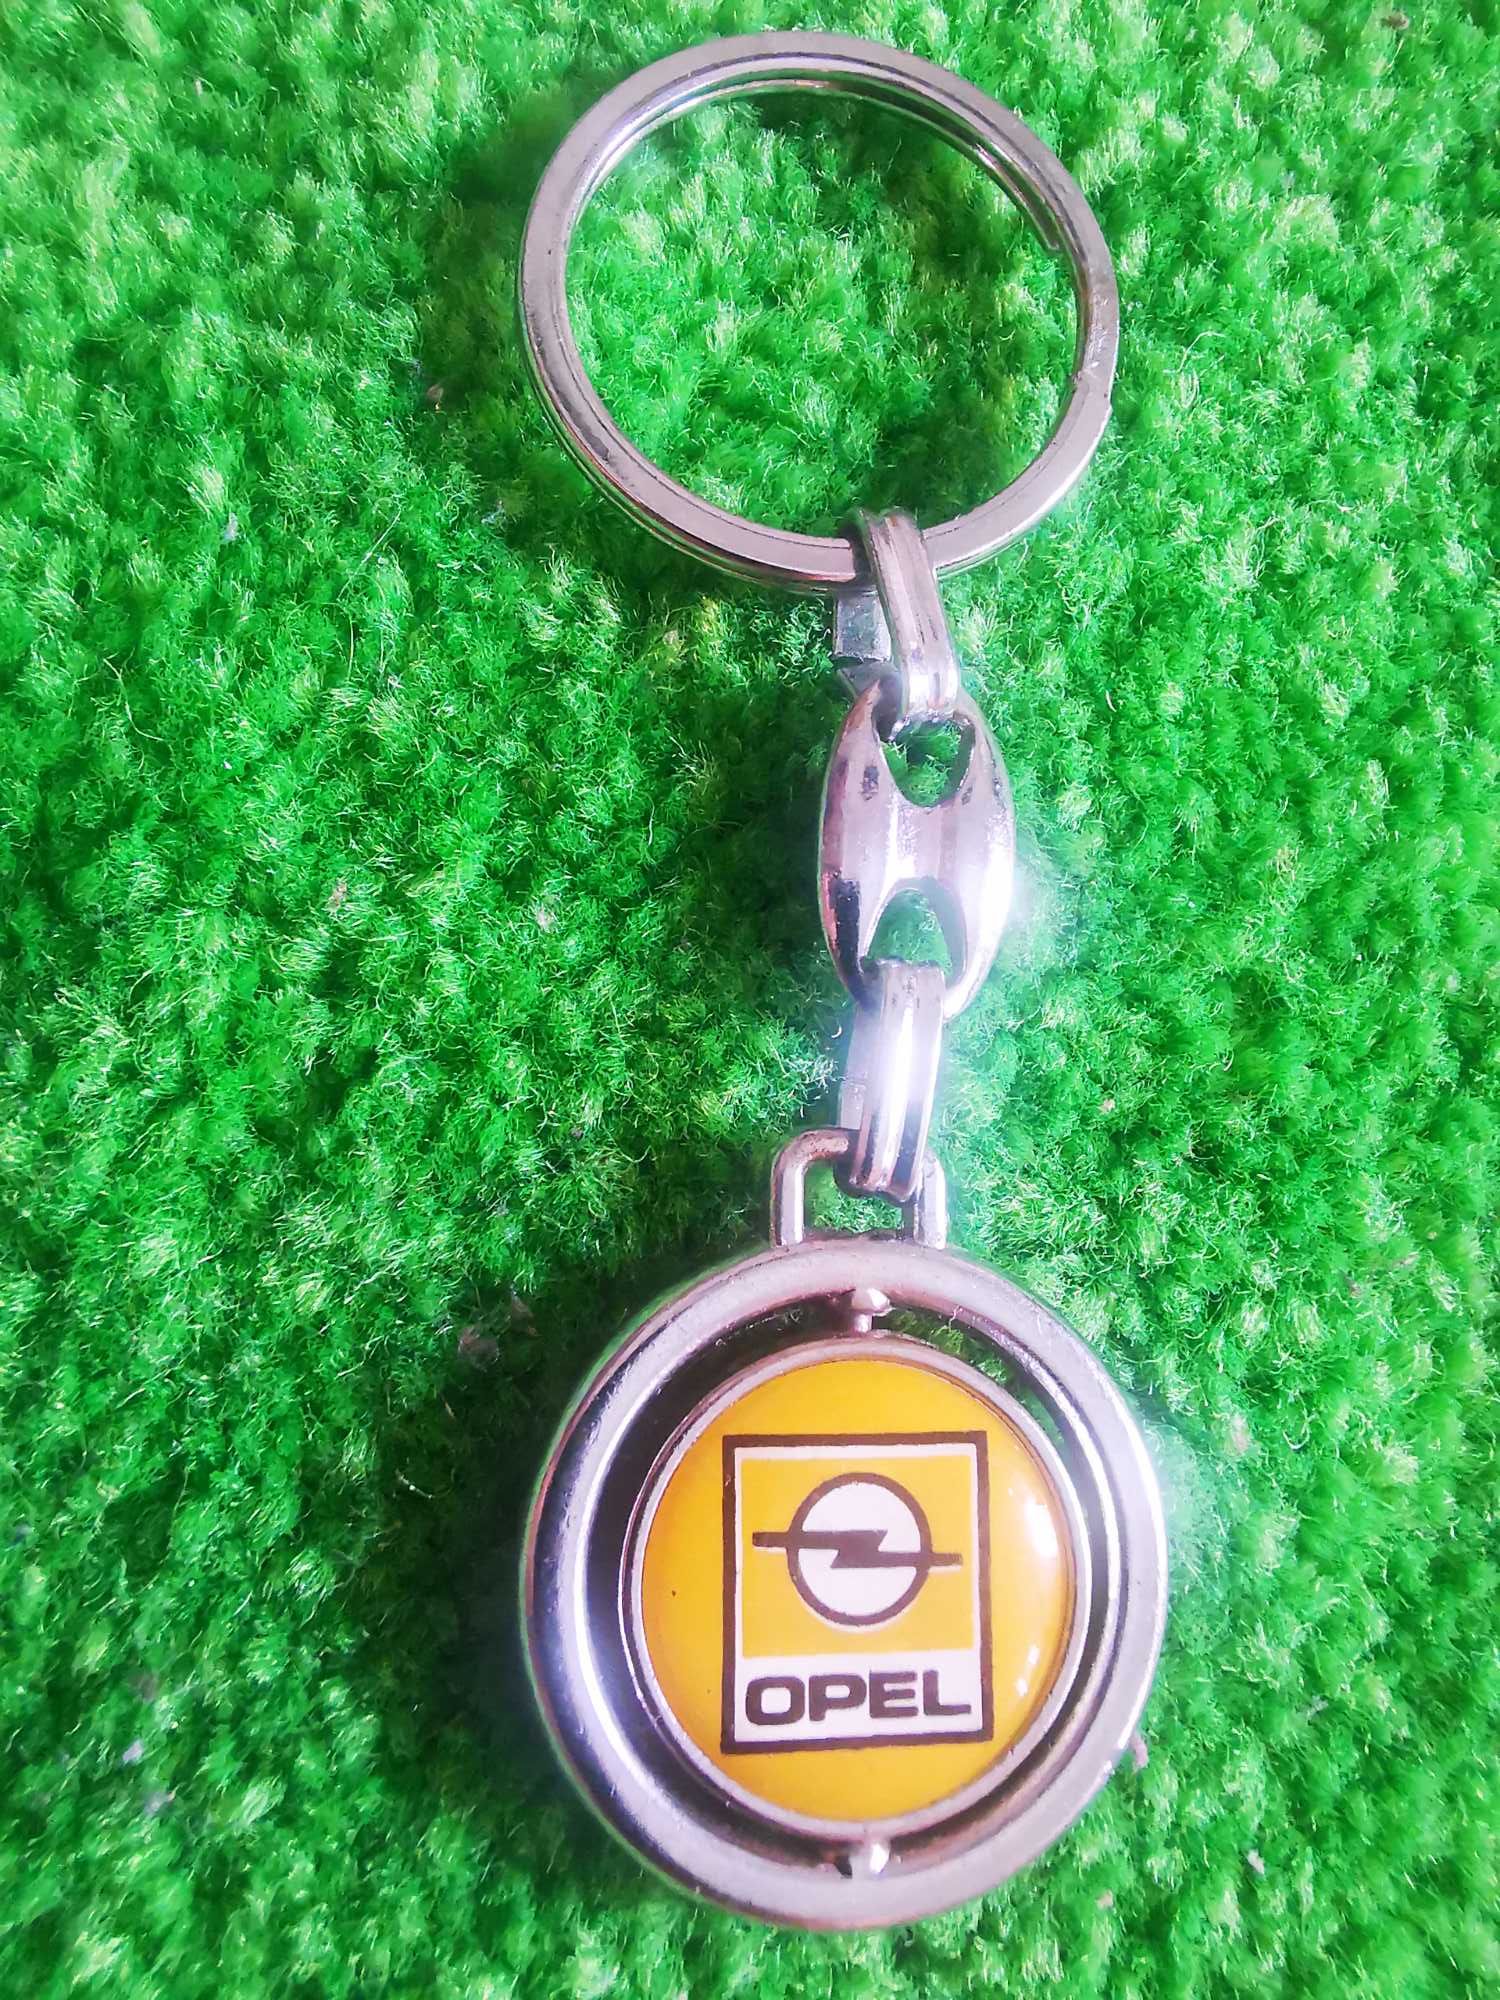 Breloc Opel de colectie.